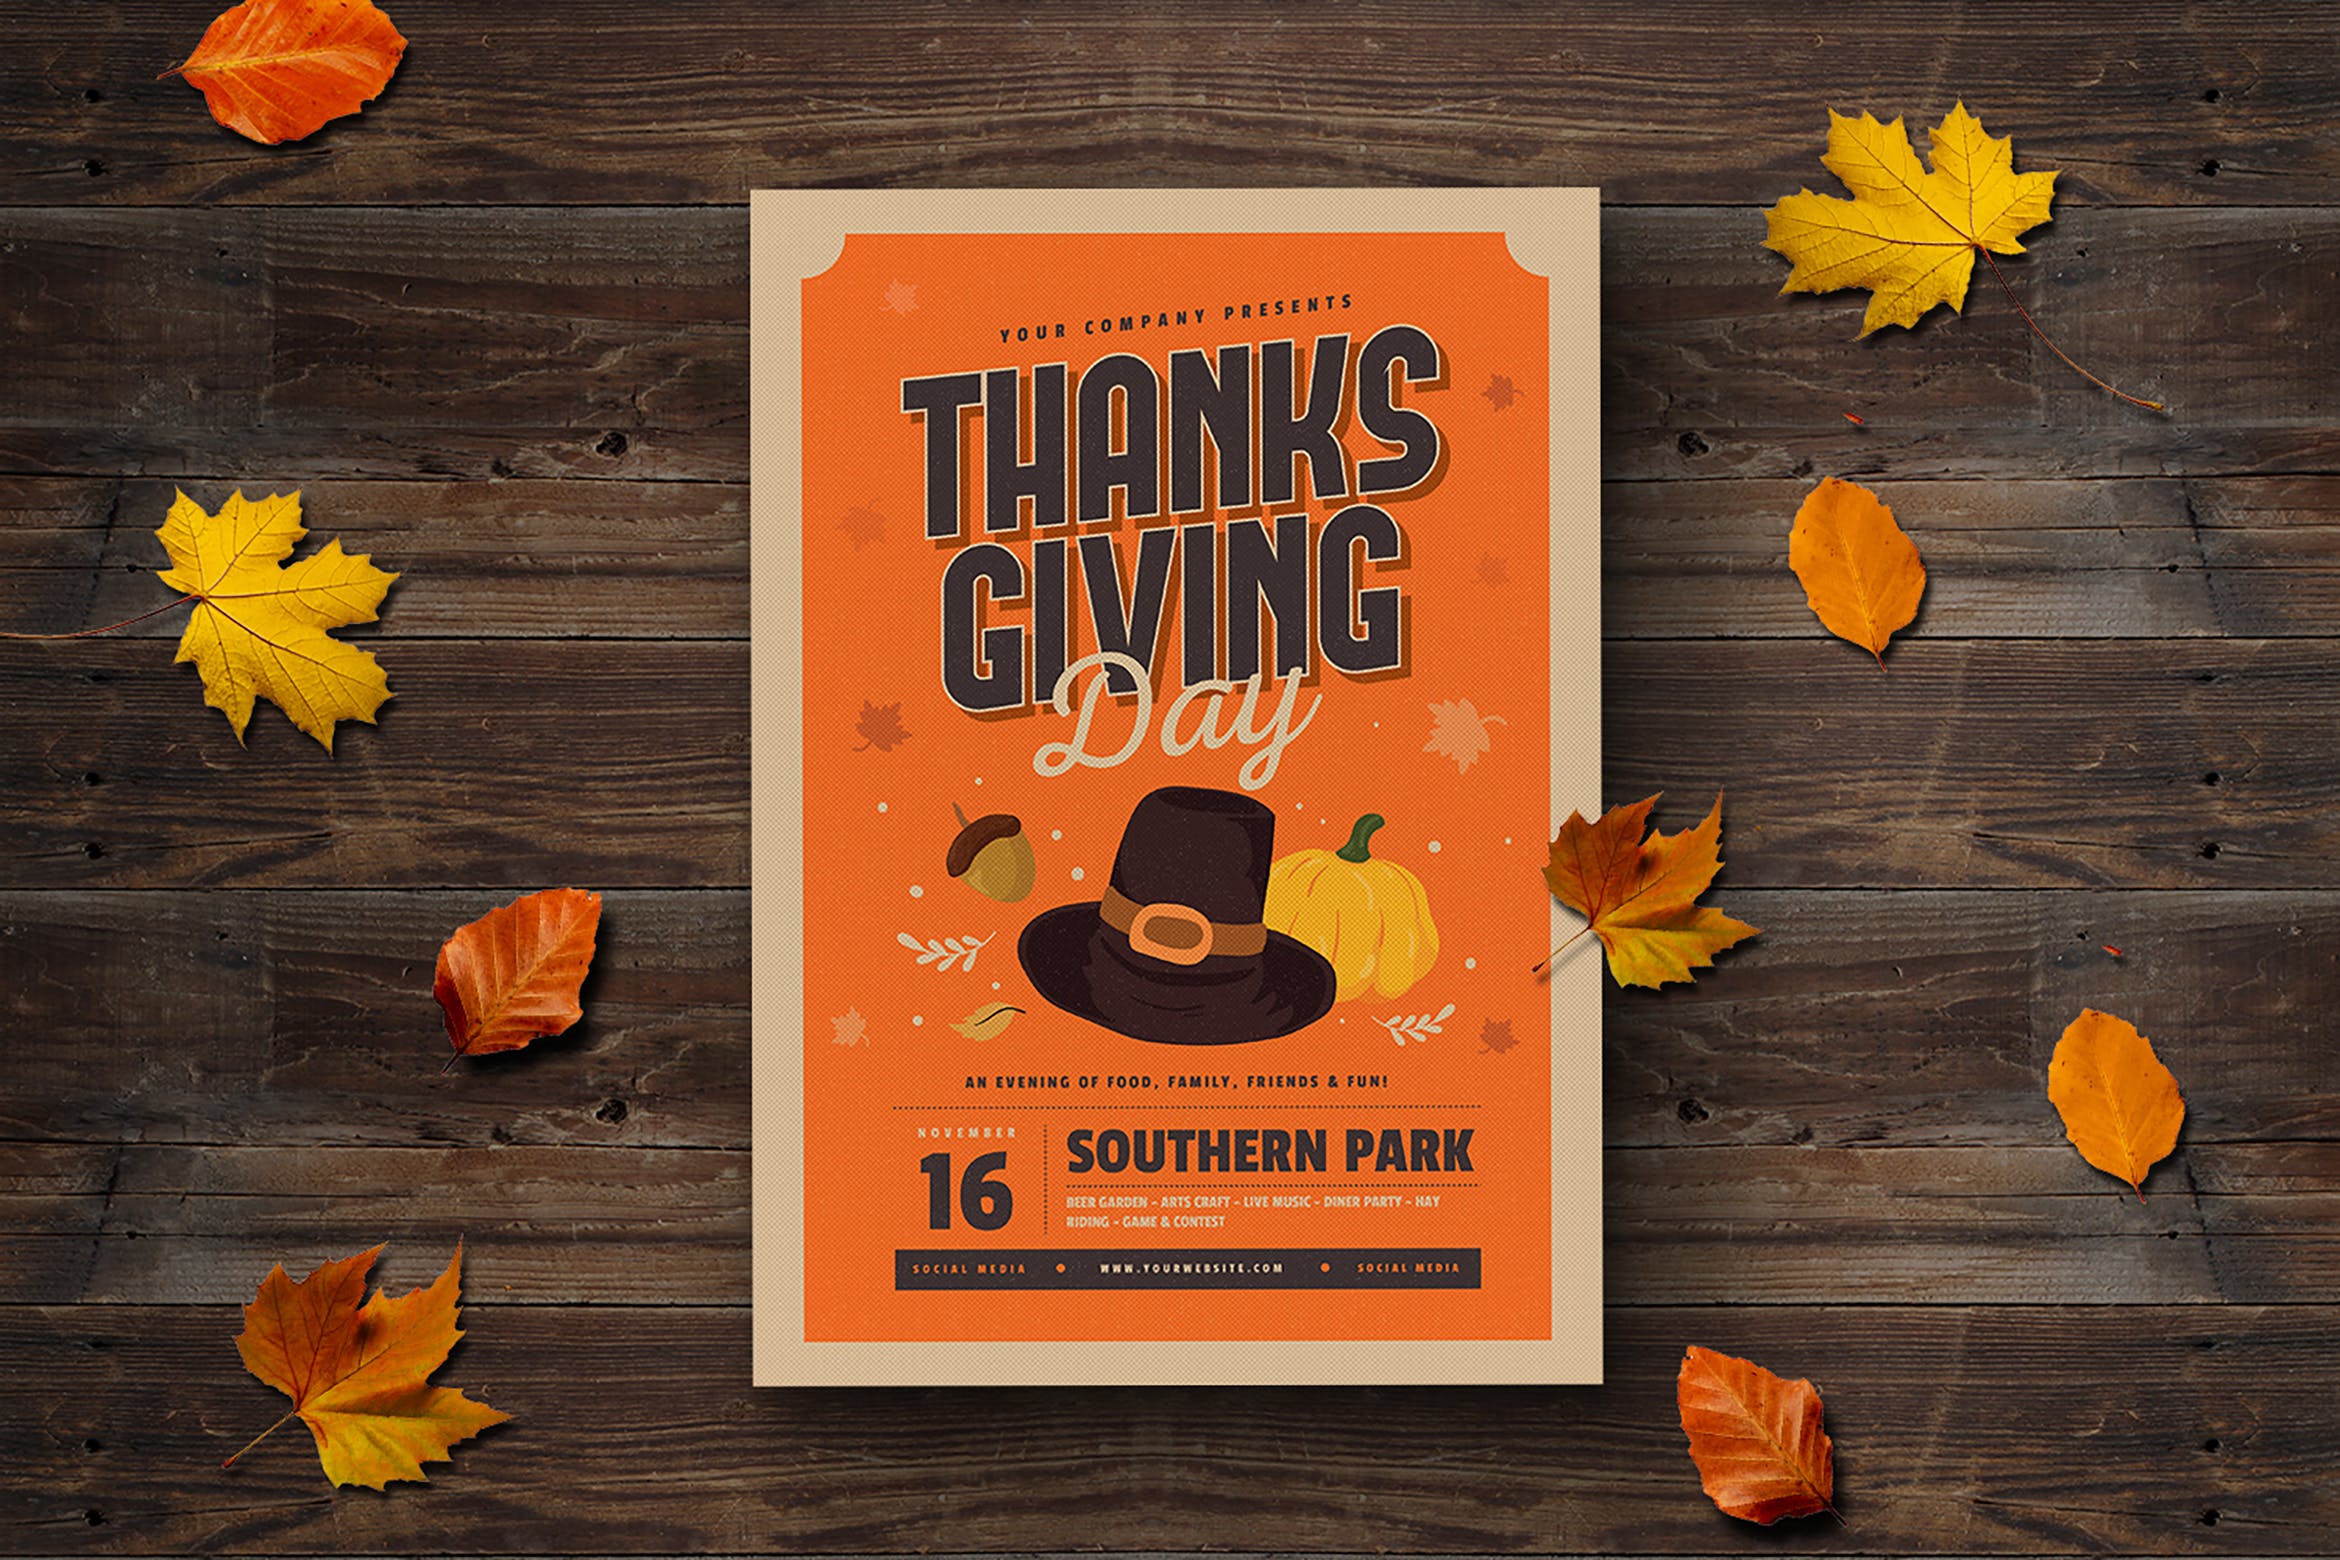 感恩节主题活动邀请海报传单设计模板 Thanksgiving Flyer插图